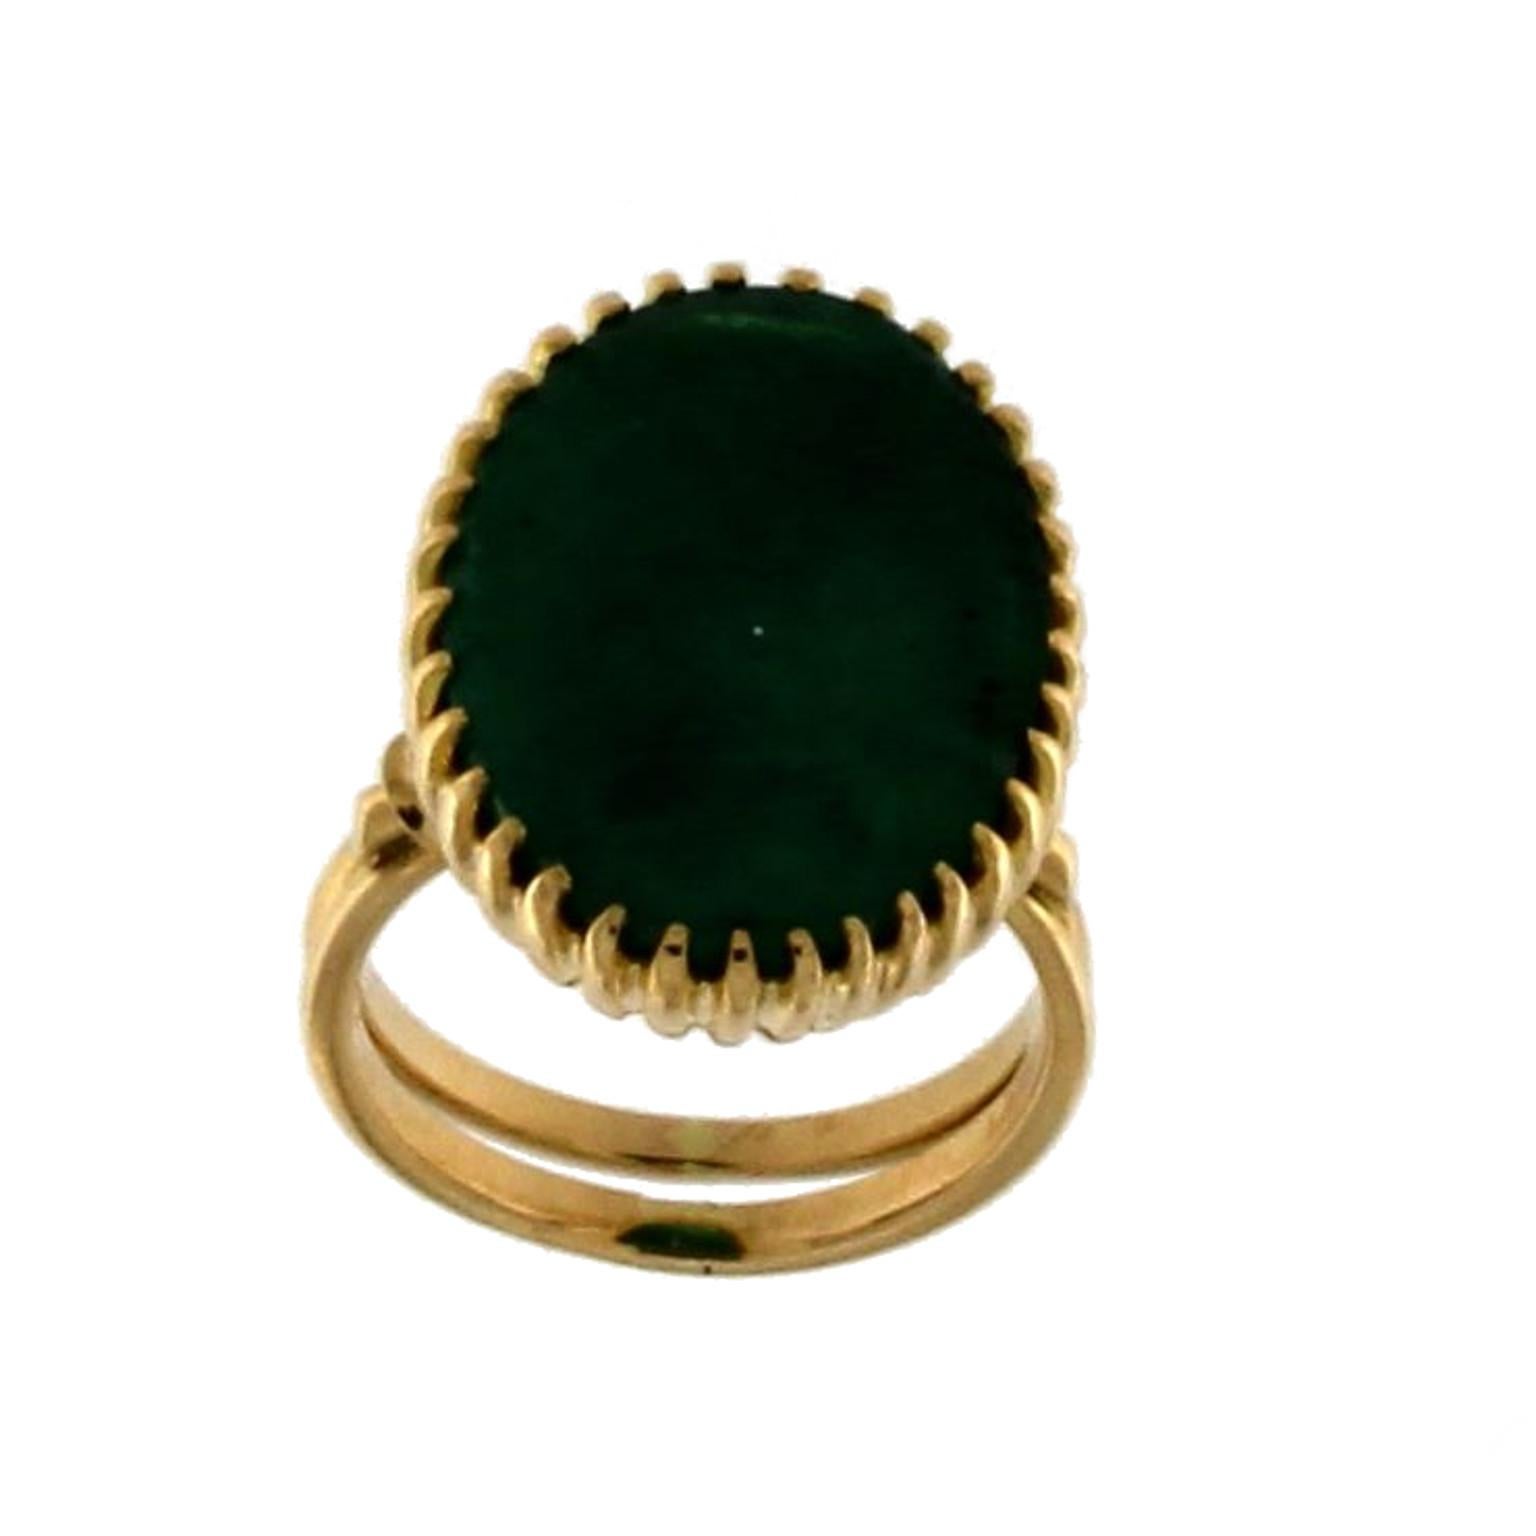 Ring 18 Karat Gelbgold mit grünem Achat

das Gesamtgewicht des Rings beträgt  gr 8.15

Agata Größe ist 16x21
US-GRÖSSE 6,5
